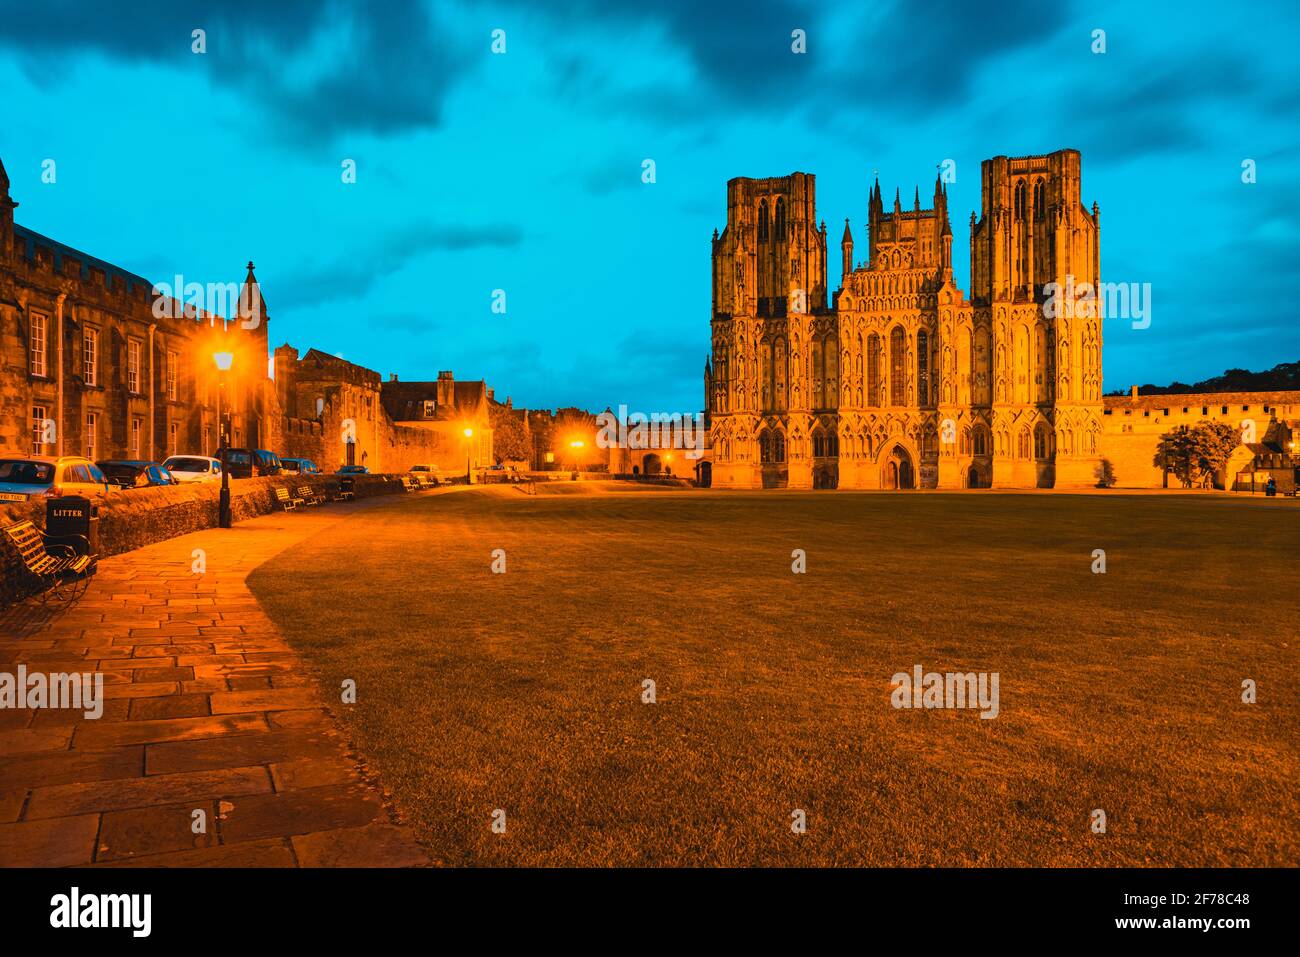 Wells Cattedrale nel Somerset Inghilterra con luci arancioni che illuminano il Di fronte occidentale della struttura gotica dei primi inglesi e del verde davanti Foto Stock